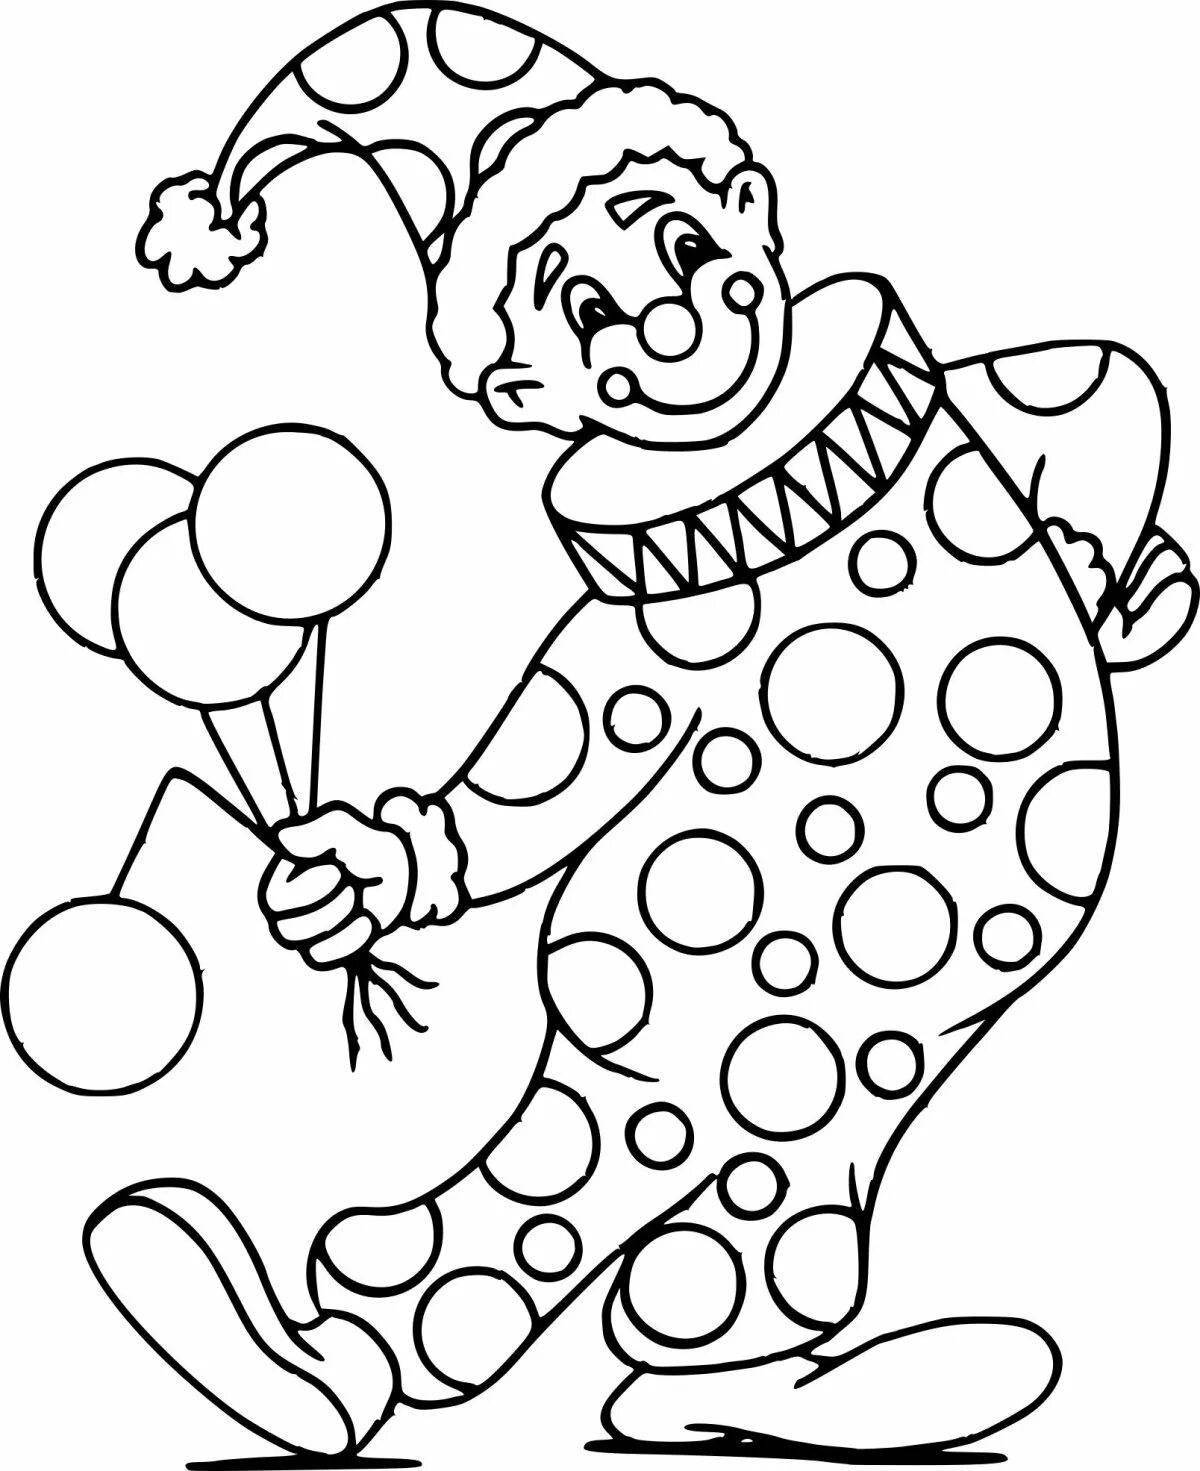 Раскраска сверкающий клоун для дошкольников